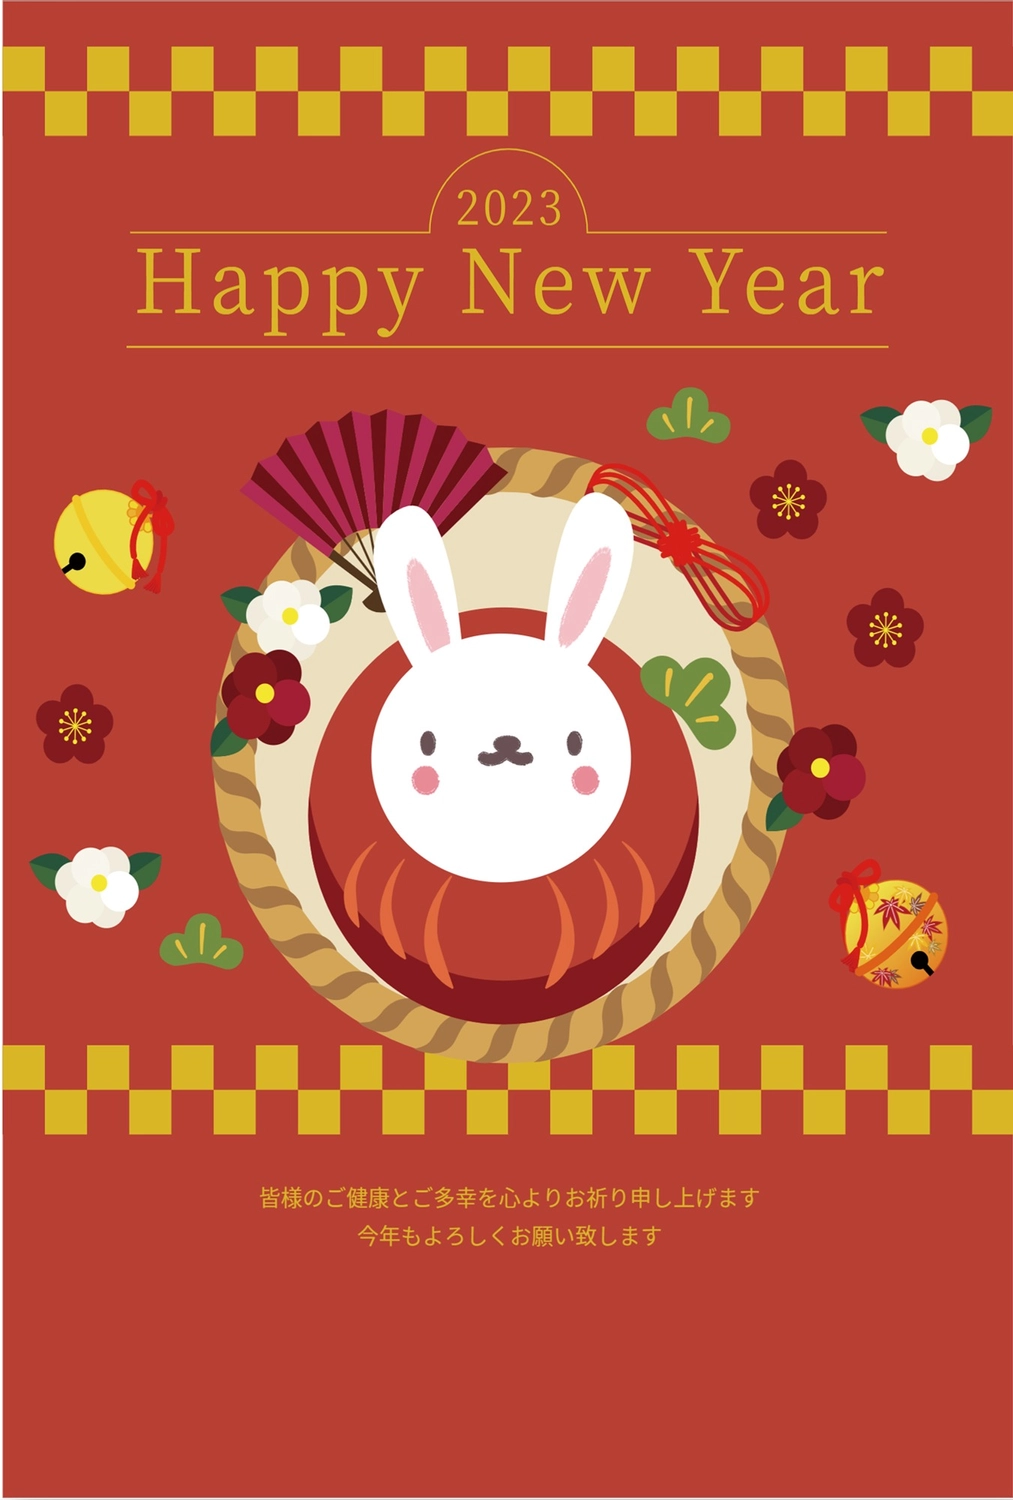 赤背景のうさぎだるま年賀状, 귀여운, 令和, 새해 복 많이 받으세요, 새해 카드 템플릿